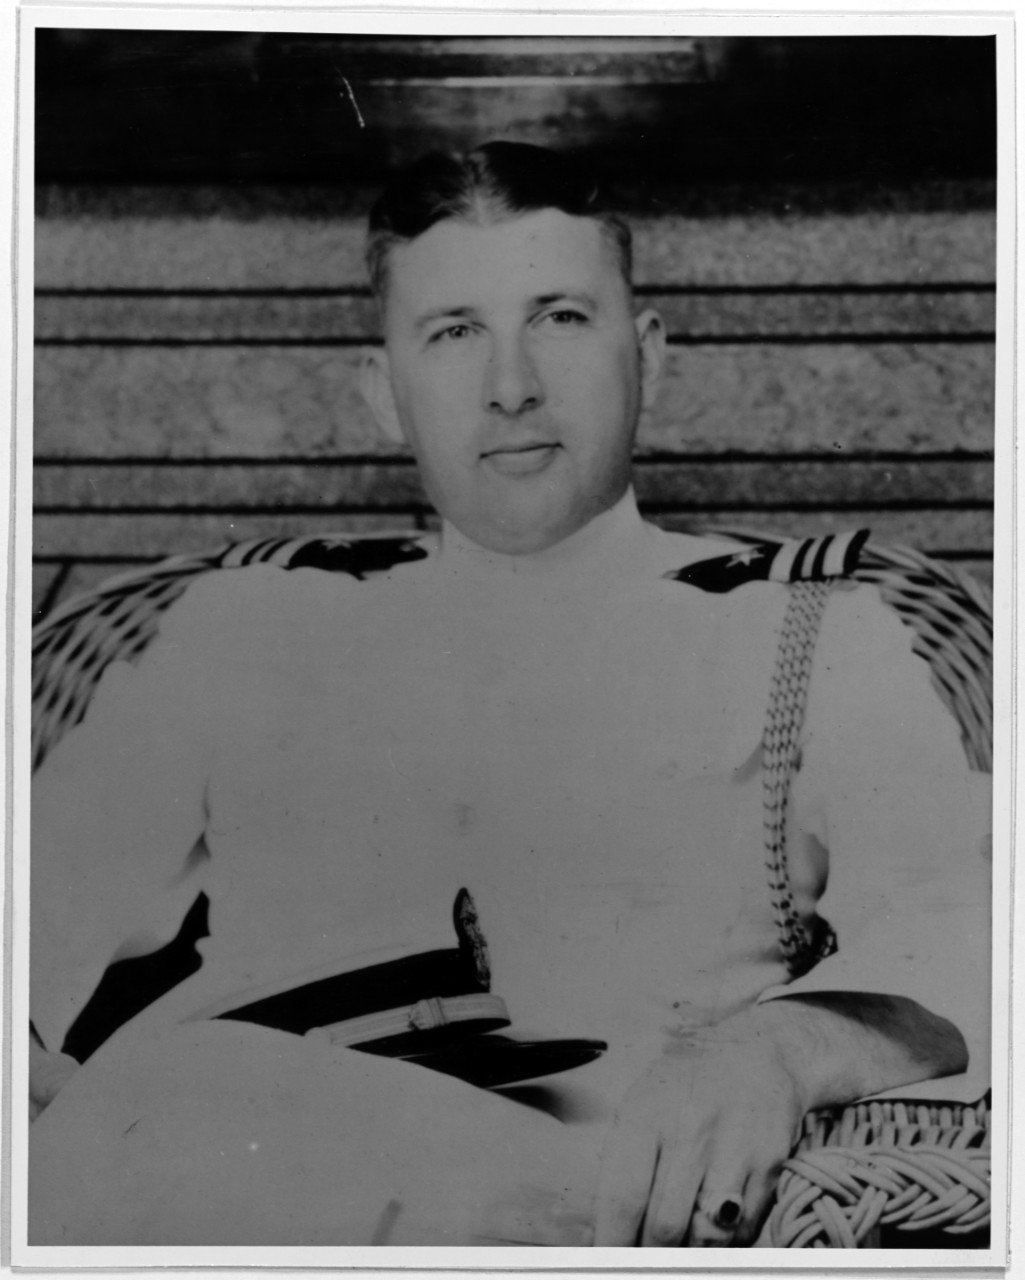 Lieutenant Commander Francis C. Denebrink, USN